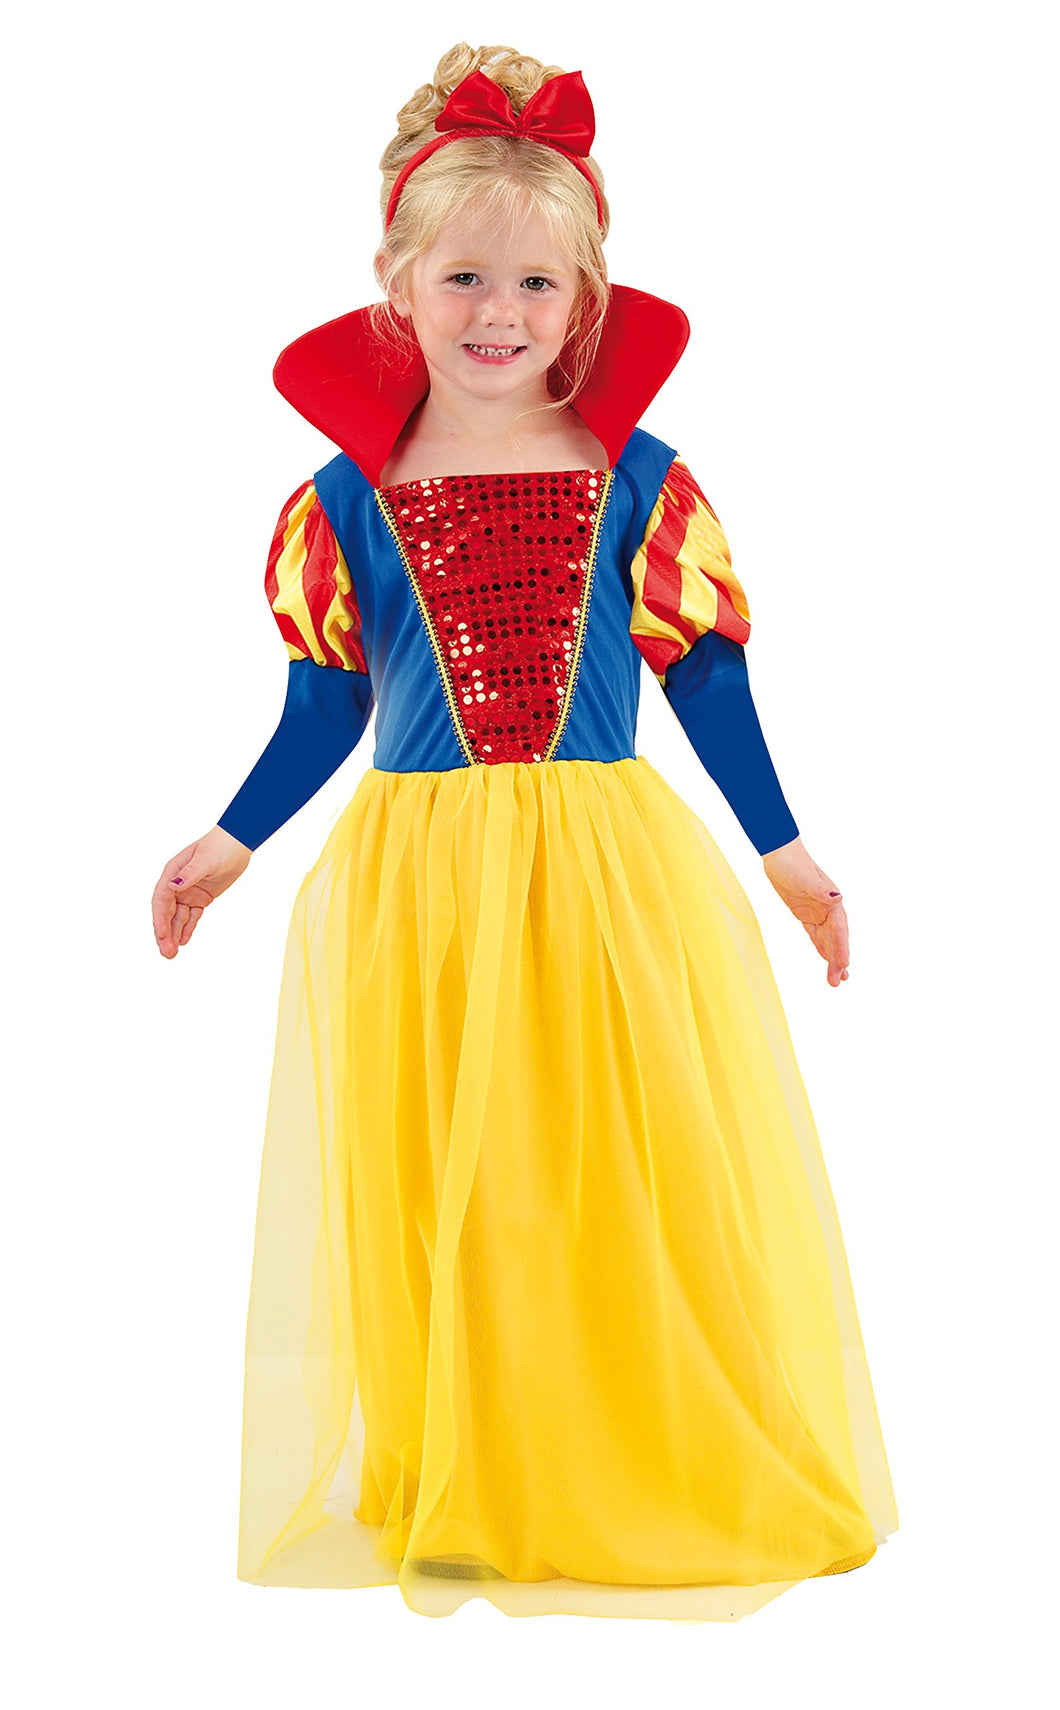 Fiori Paolo- Biancaneve Costume Bambina, Multicolore, 3-4 anni, 61339. –